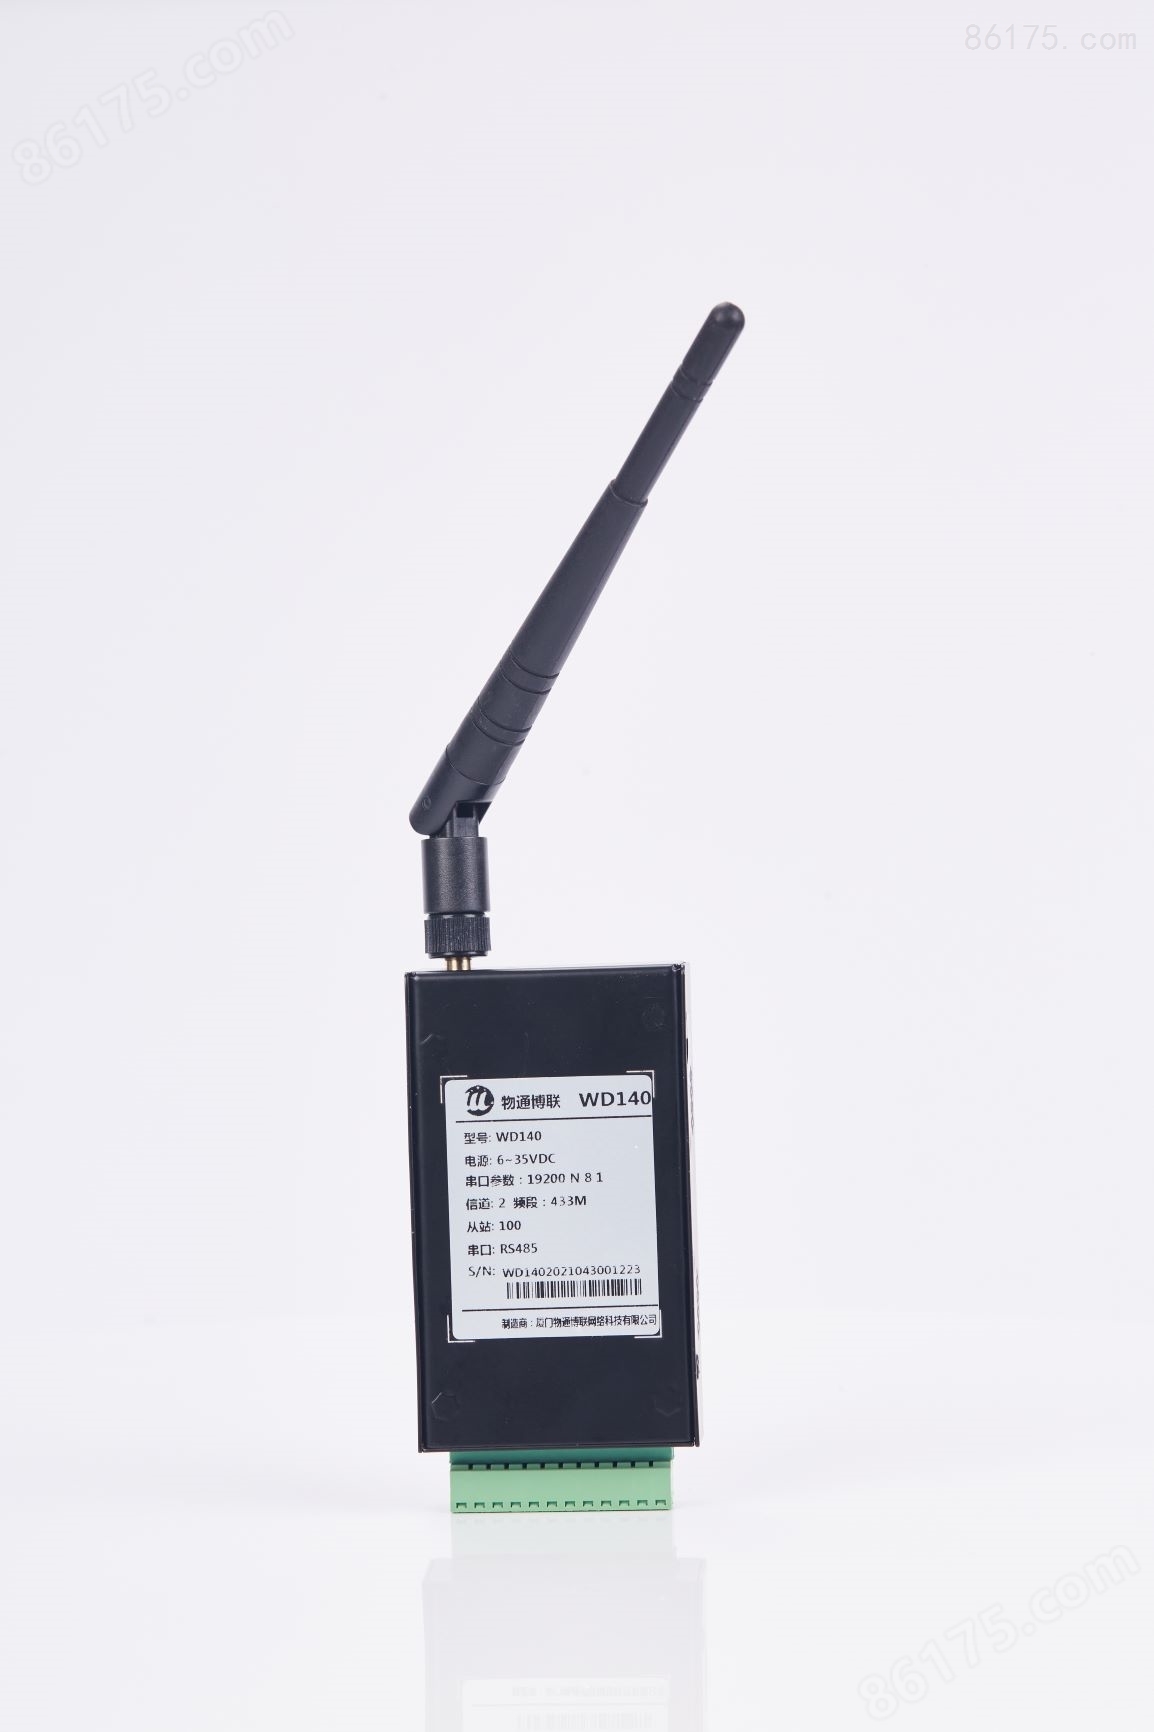 仪器仪表数据采集终端WD140 LORA远程传输